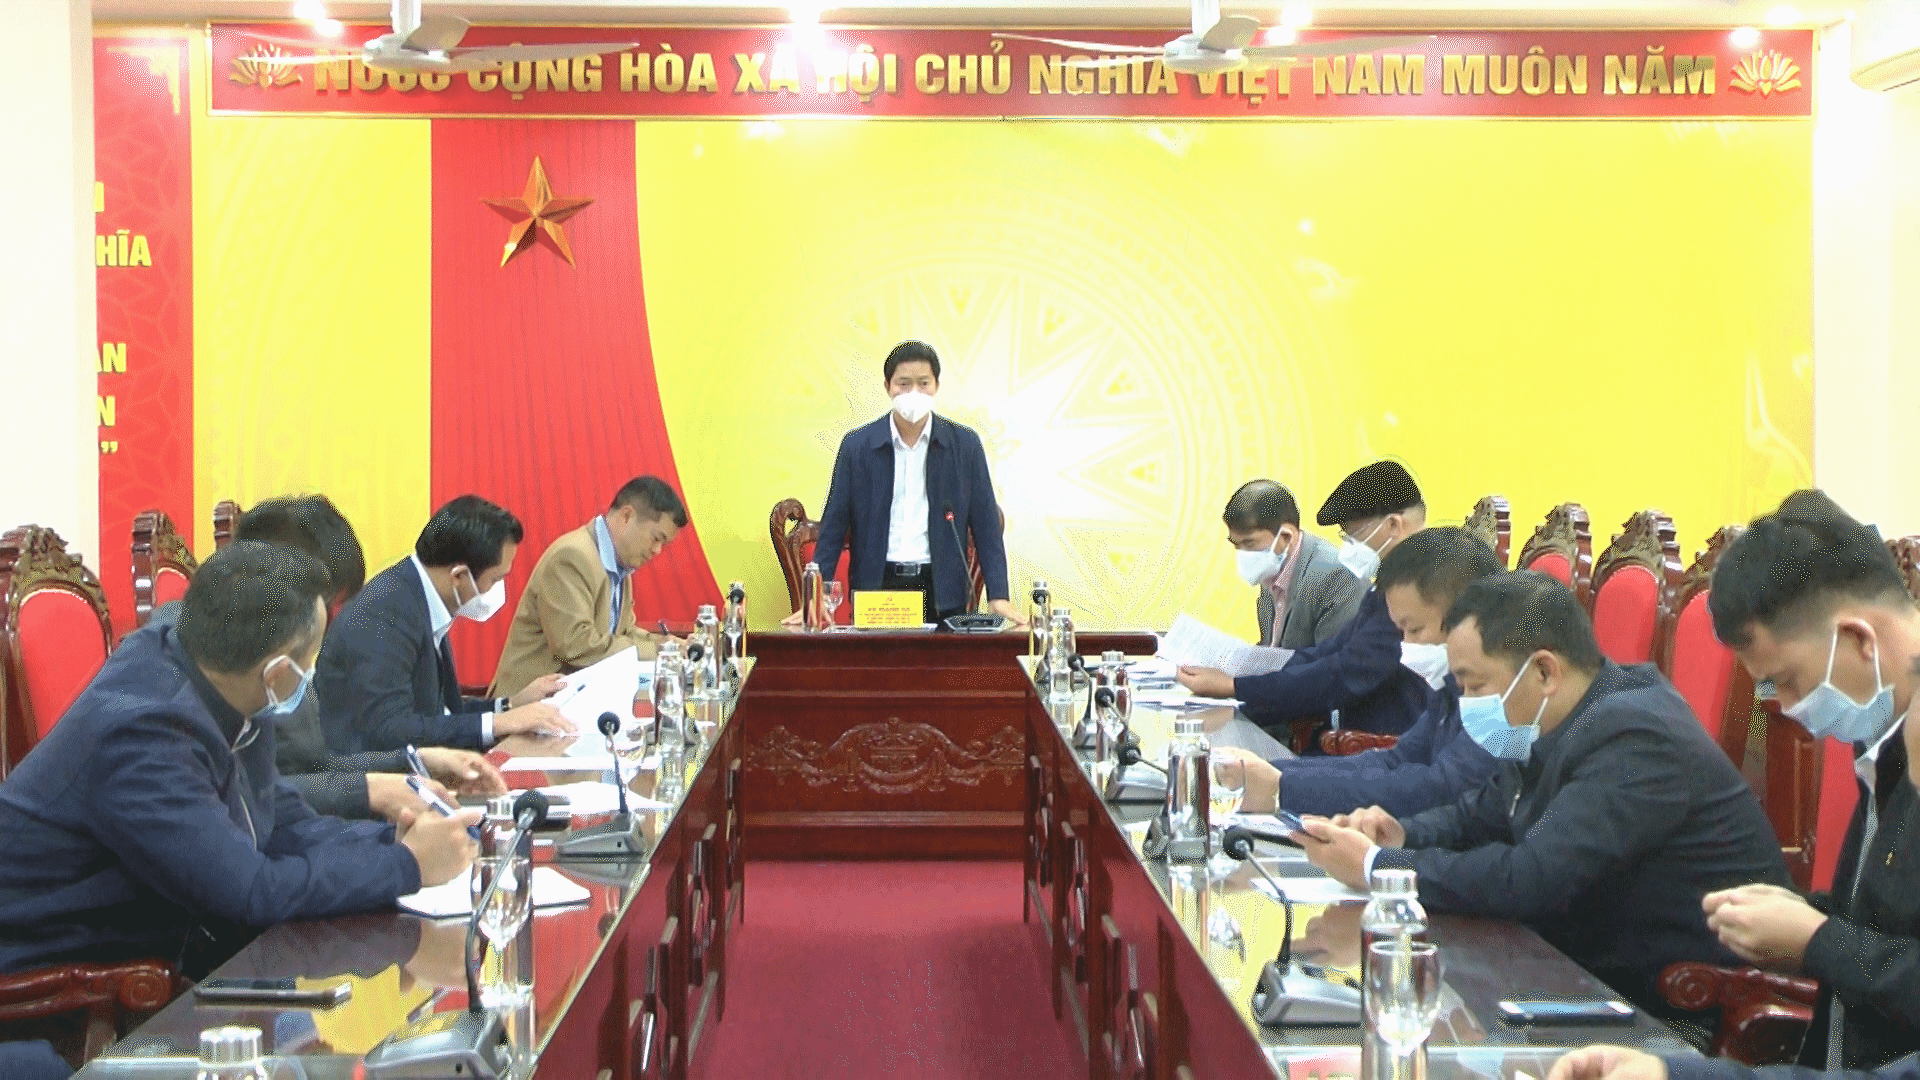 Trưởng Ban Tuyên giáo Tỉnh ủy Vũ Mạnh Hà phát biểu tại buổi làm việc với Ban chỉ đạo phòng, chống dịch Covid-19 huyện Yên Minh.